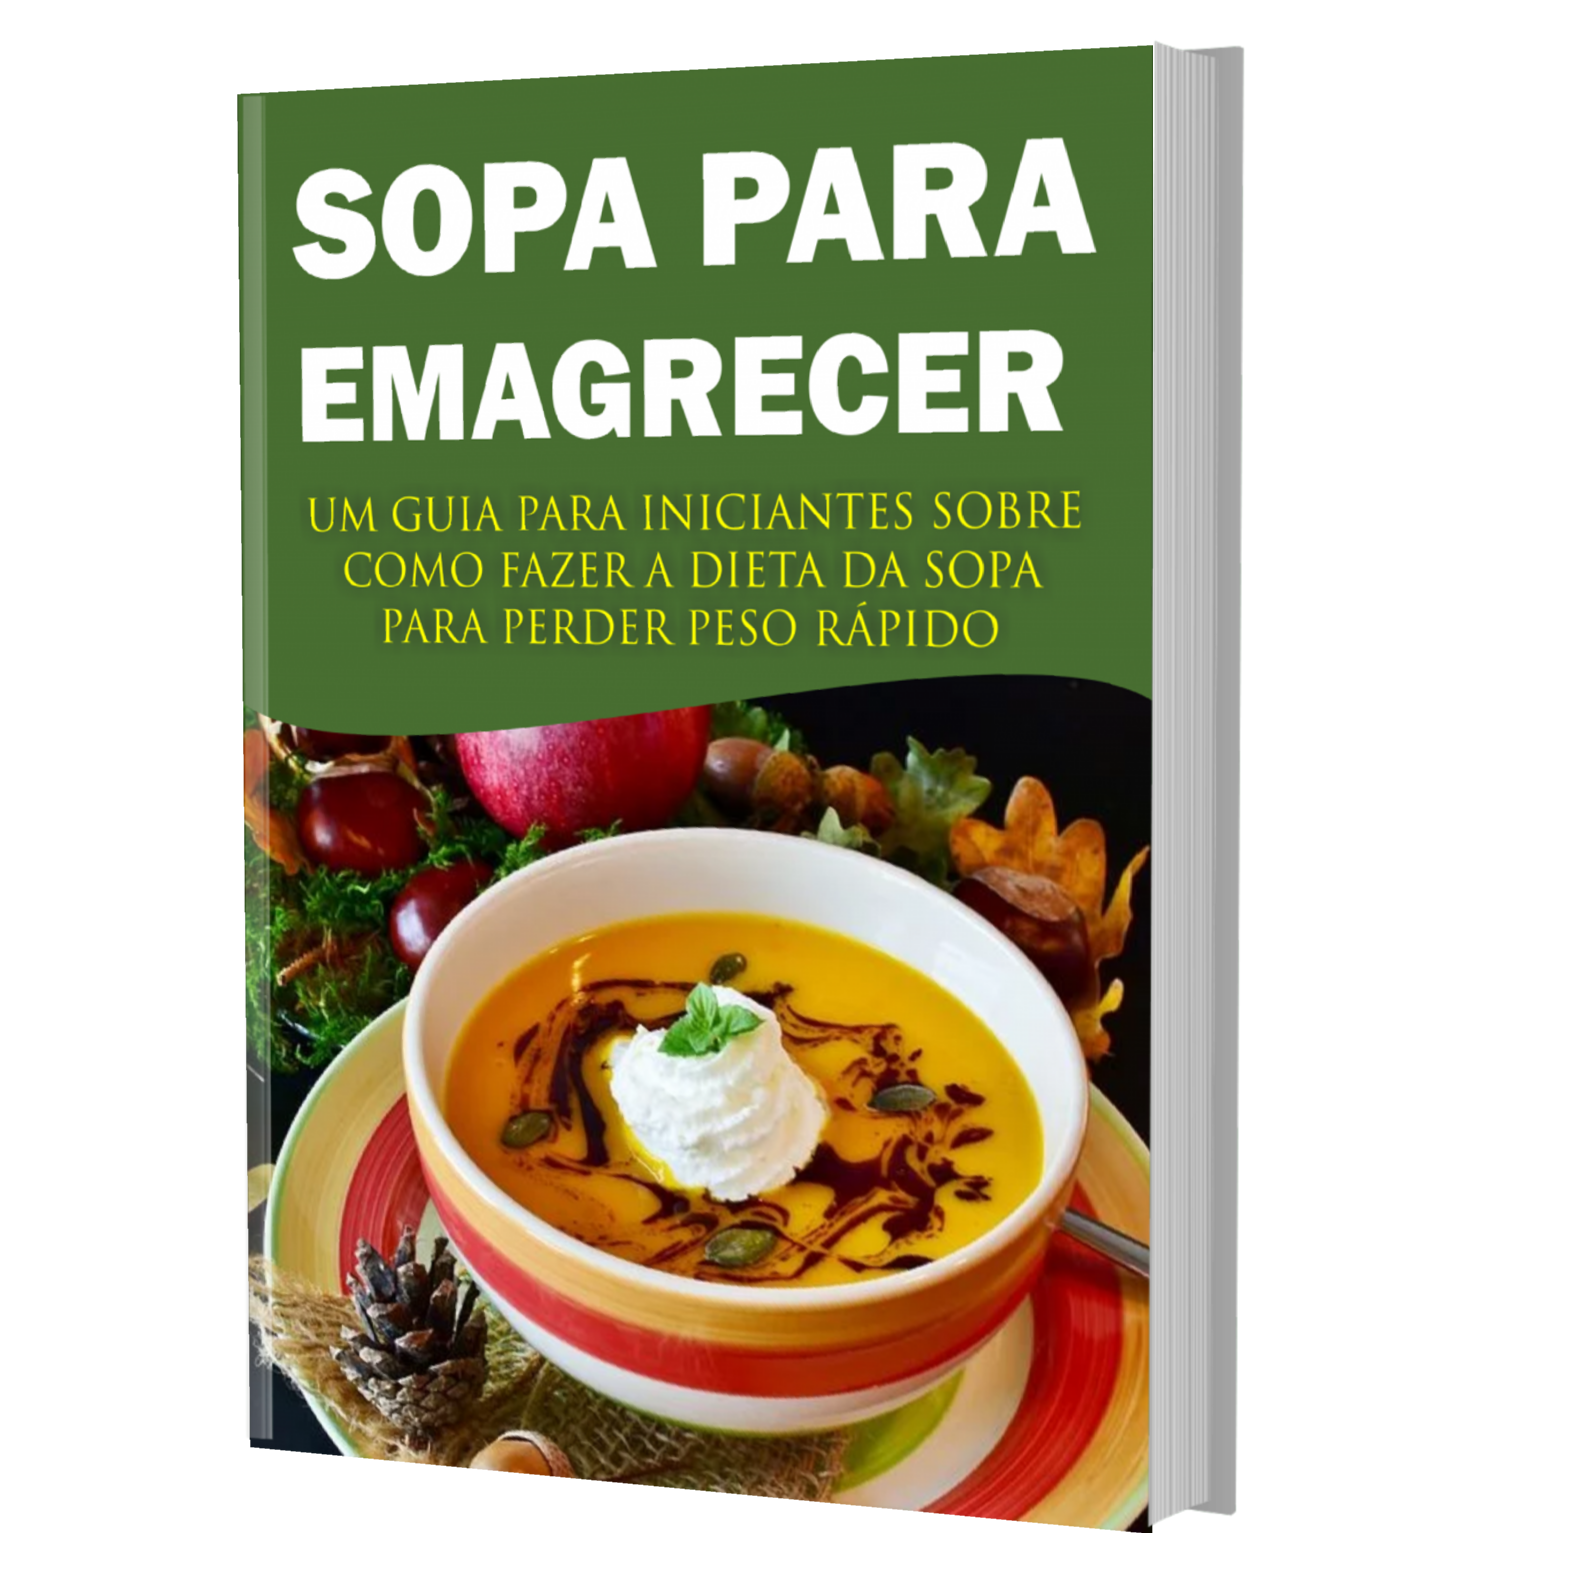 Dieta da sopa para emagrecer PDF grátis - Centro Digital Ebooks